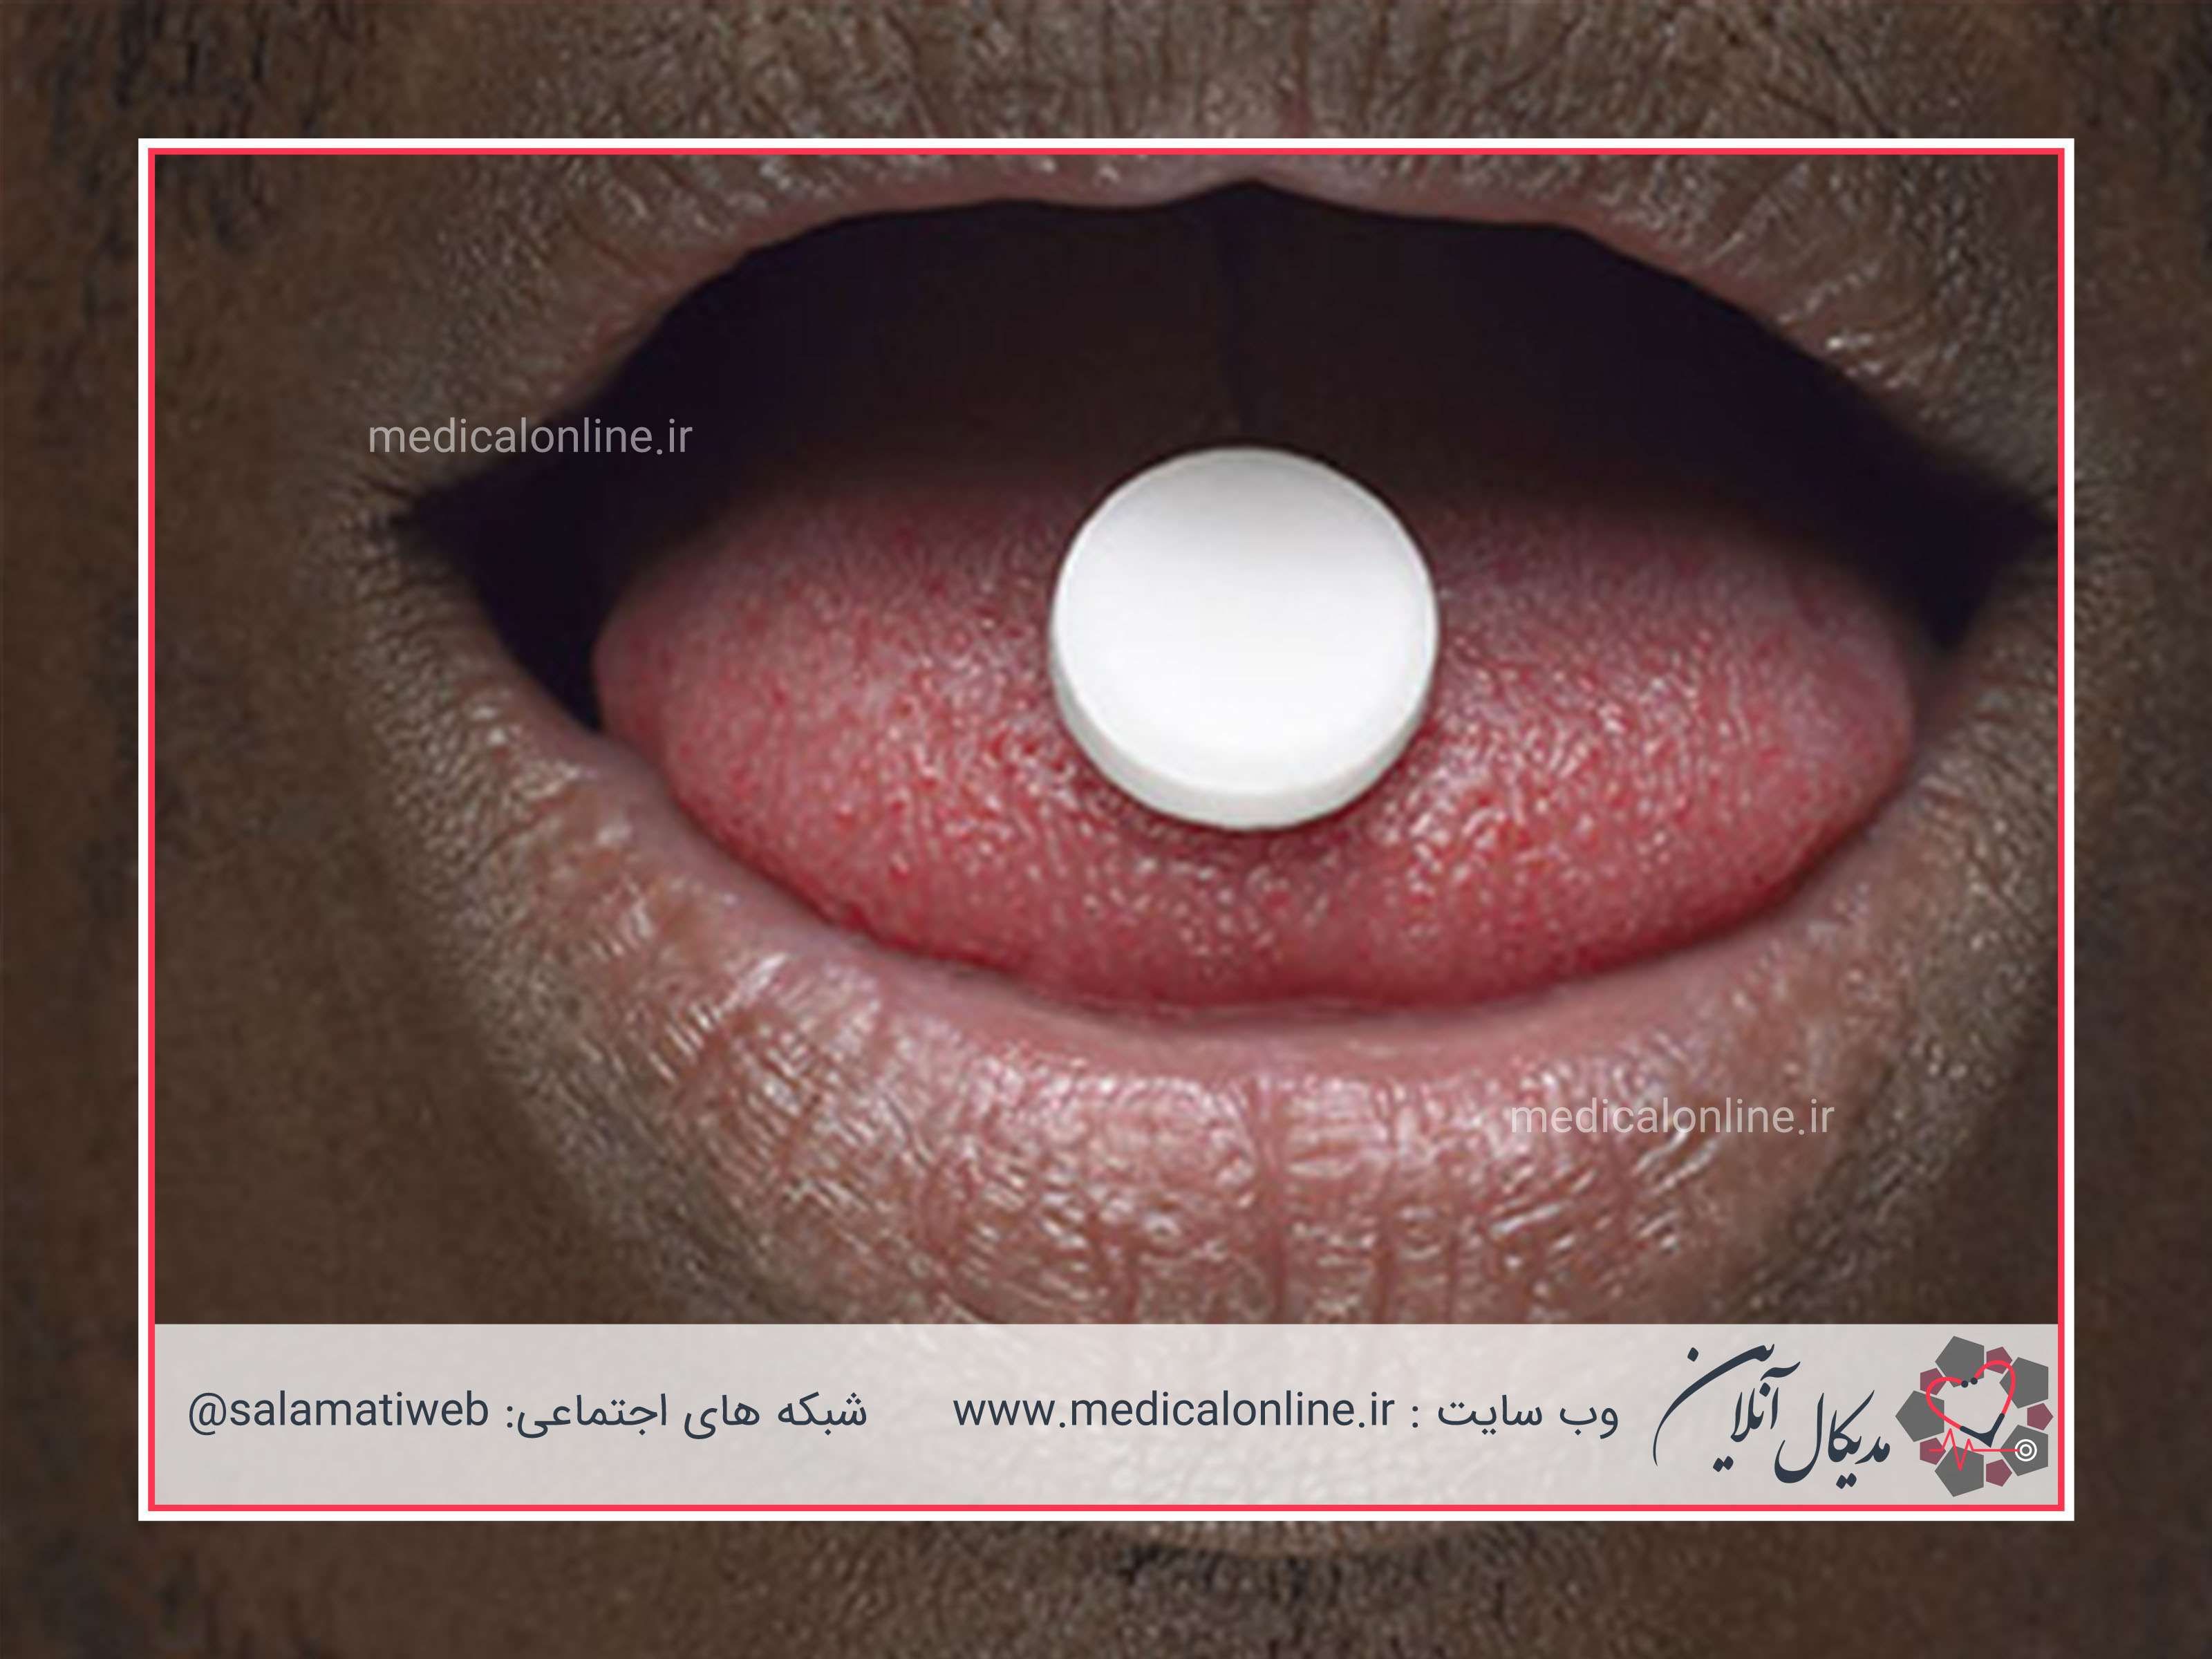 داروهایی که باعث خشکی دهان میشوند